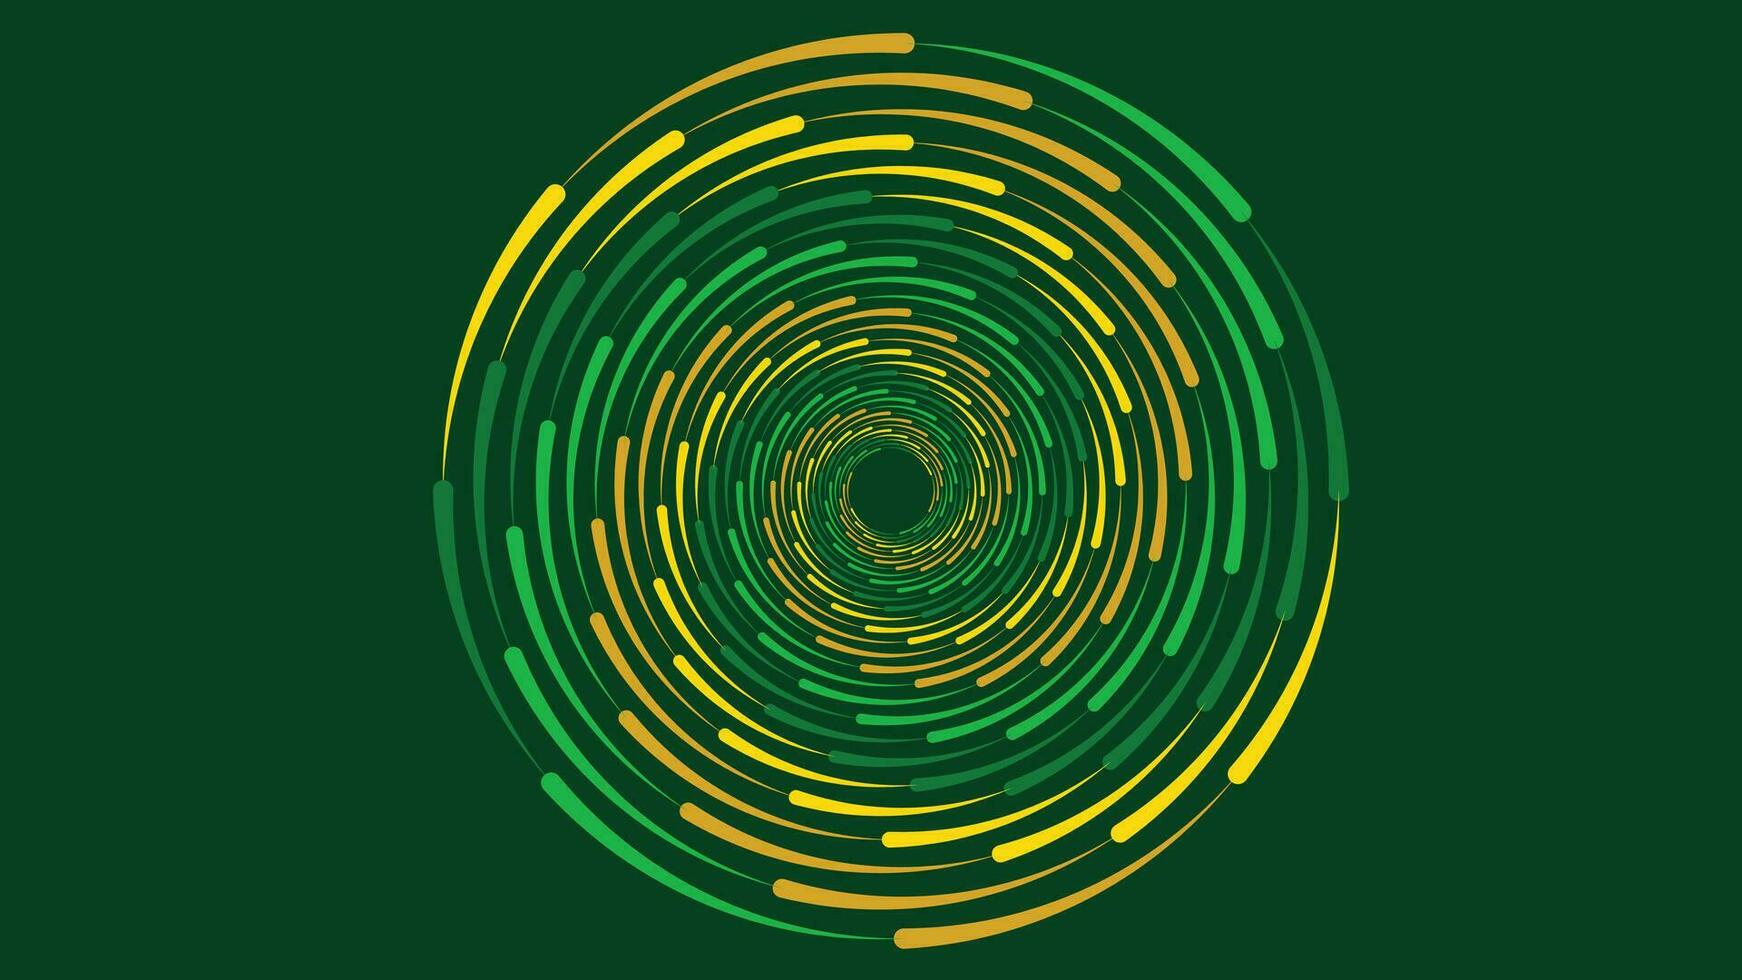 abstract draaikolk spiraal stippel achtergrond in donker groente. deze draaikolk ontwerp symbool kan worden gebruikt net zo een cycloon van informatie.n vector